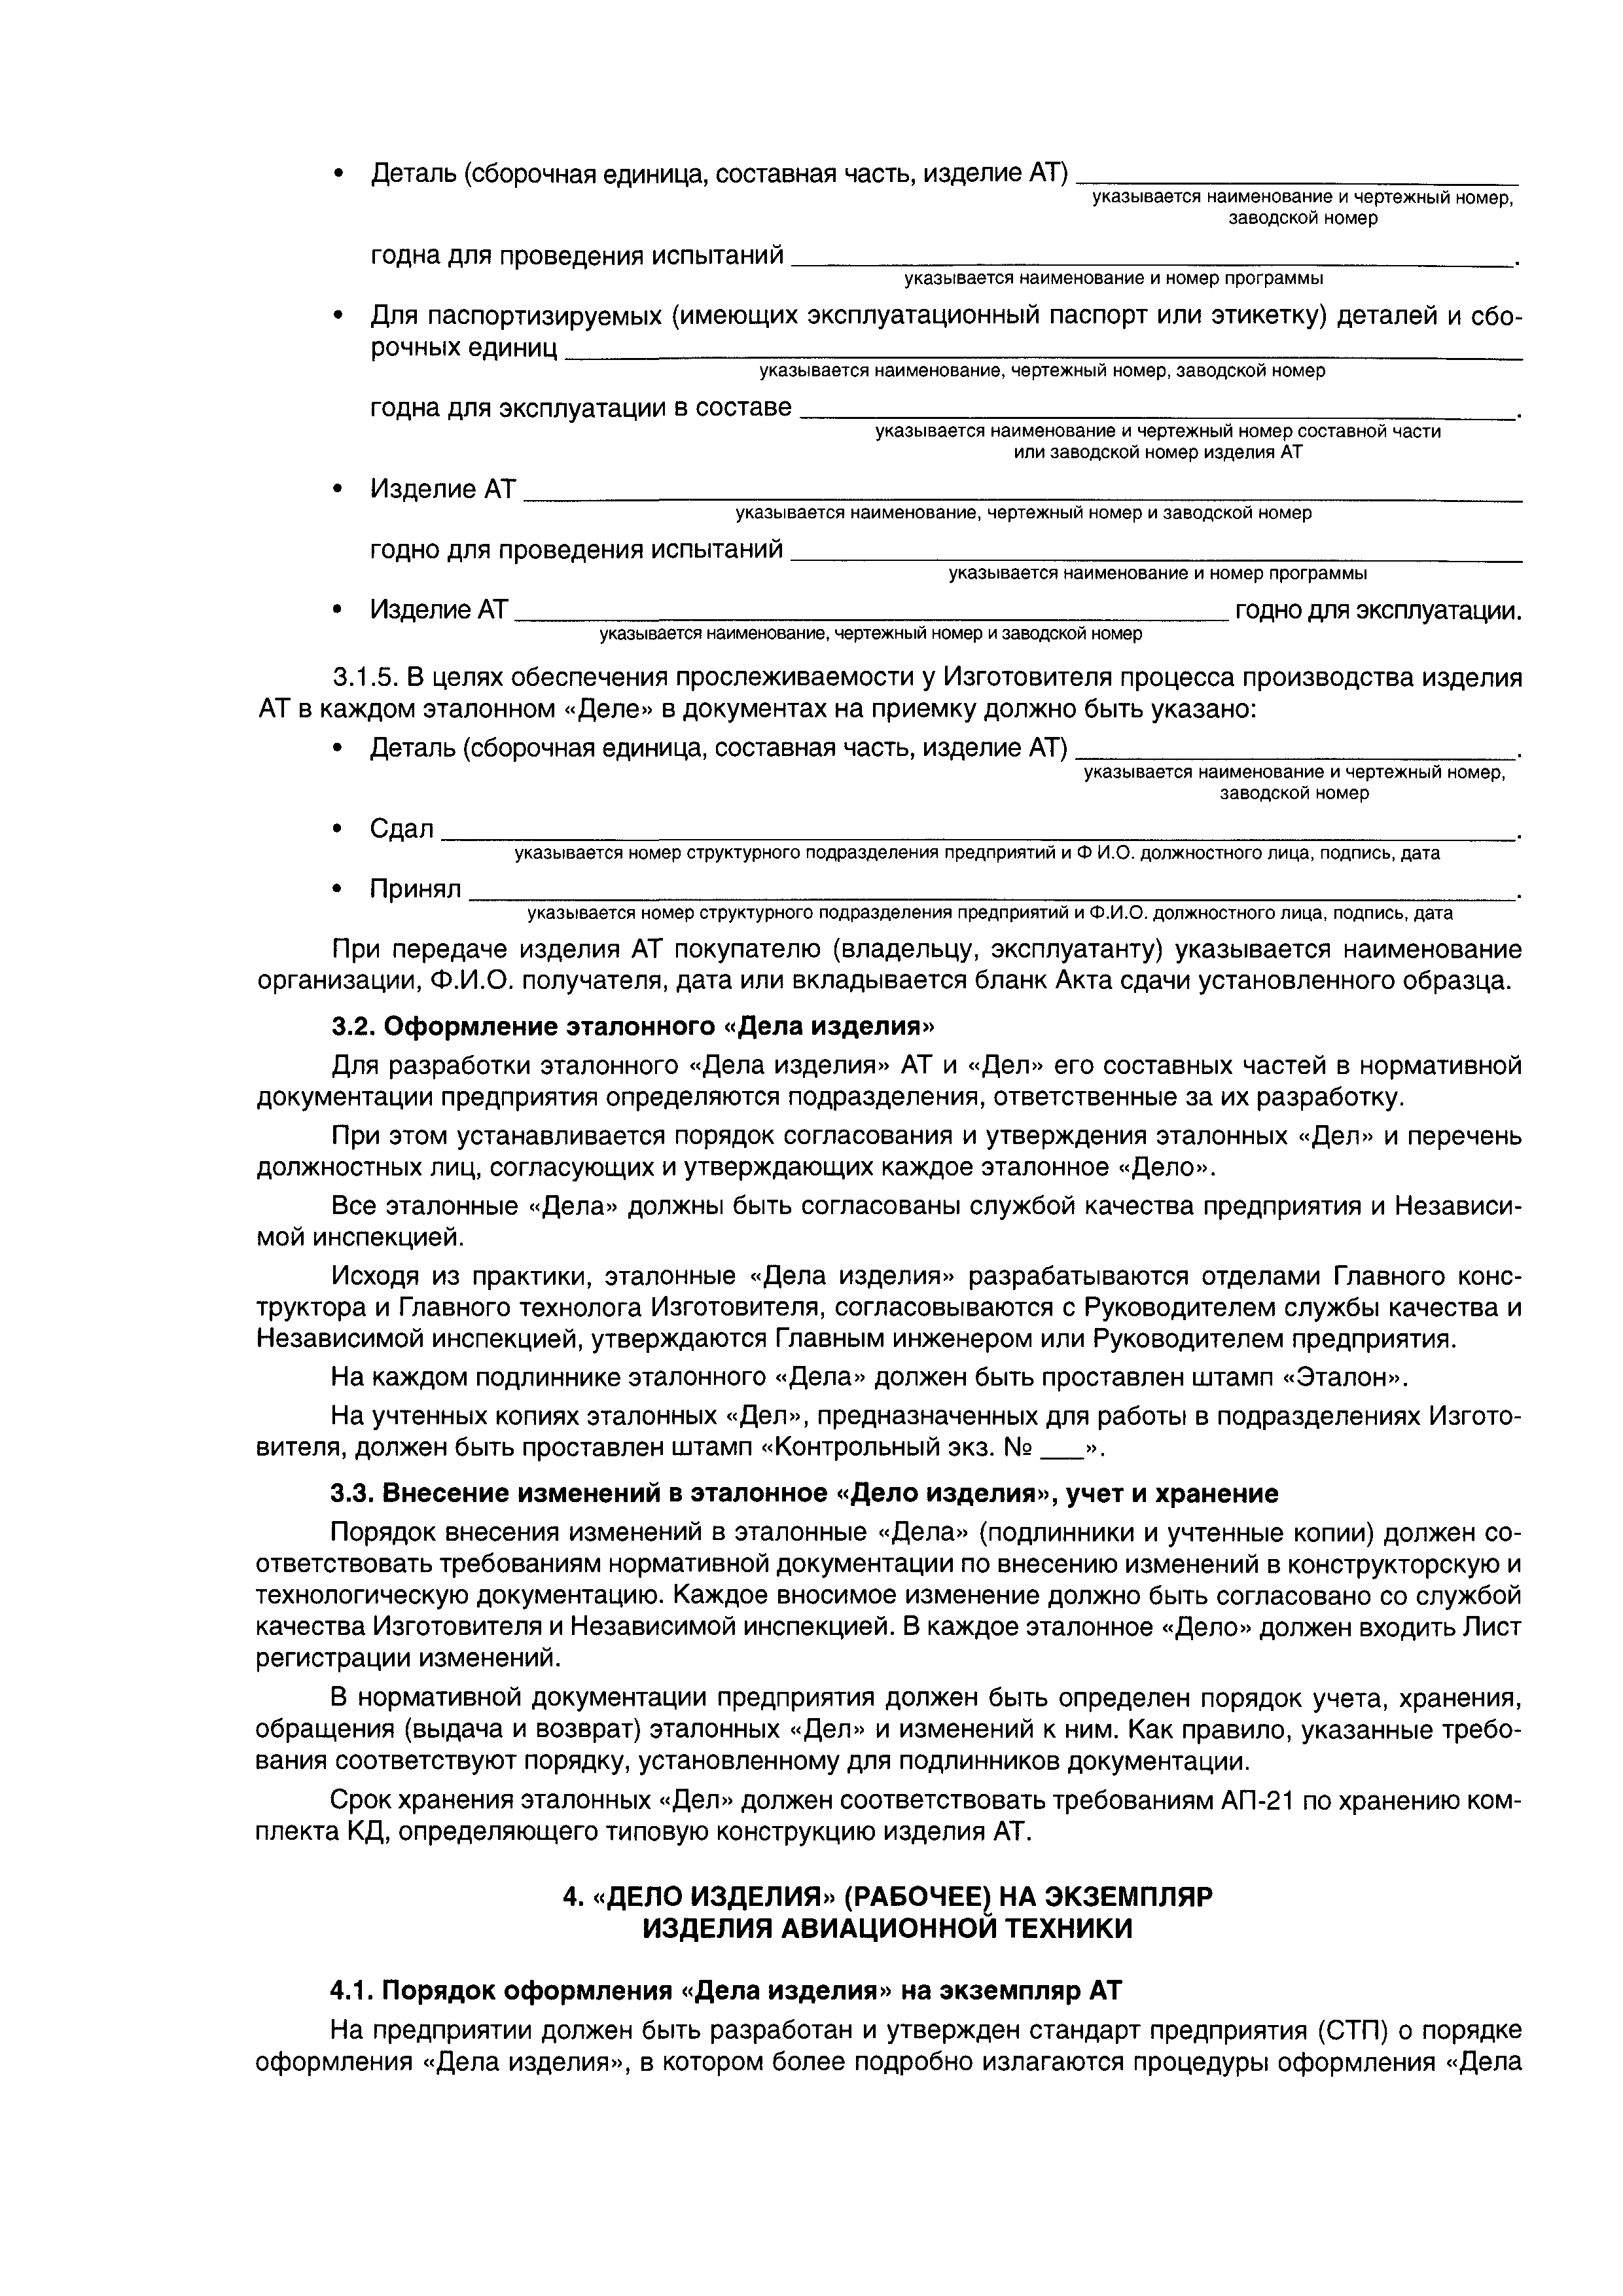 Директивное письмо 02-2003